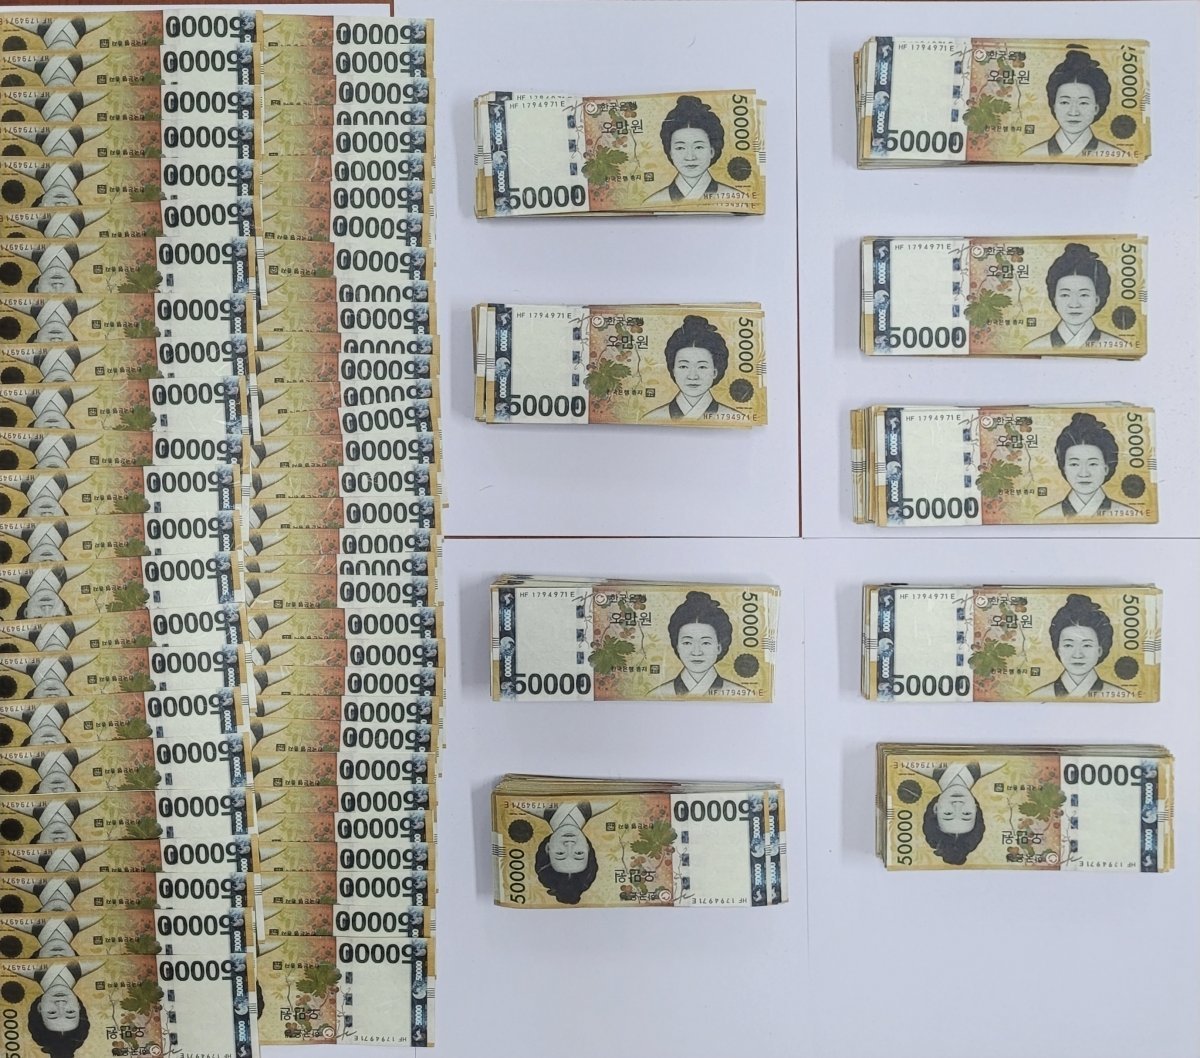 경북 구미서 위조 지폐을 제조해 유통한 일당 18명이 잡혔다. 구미서 제공